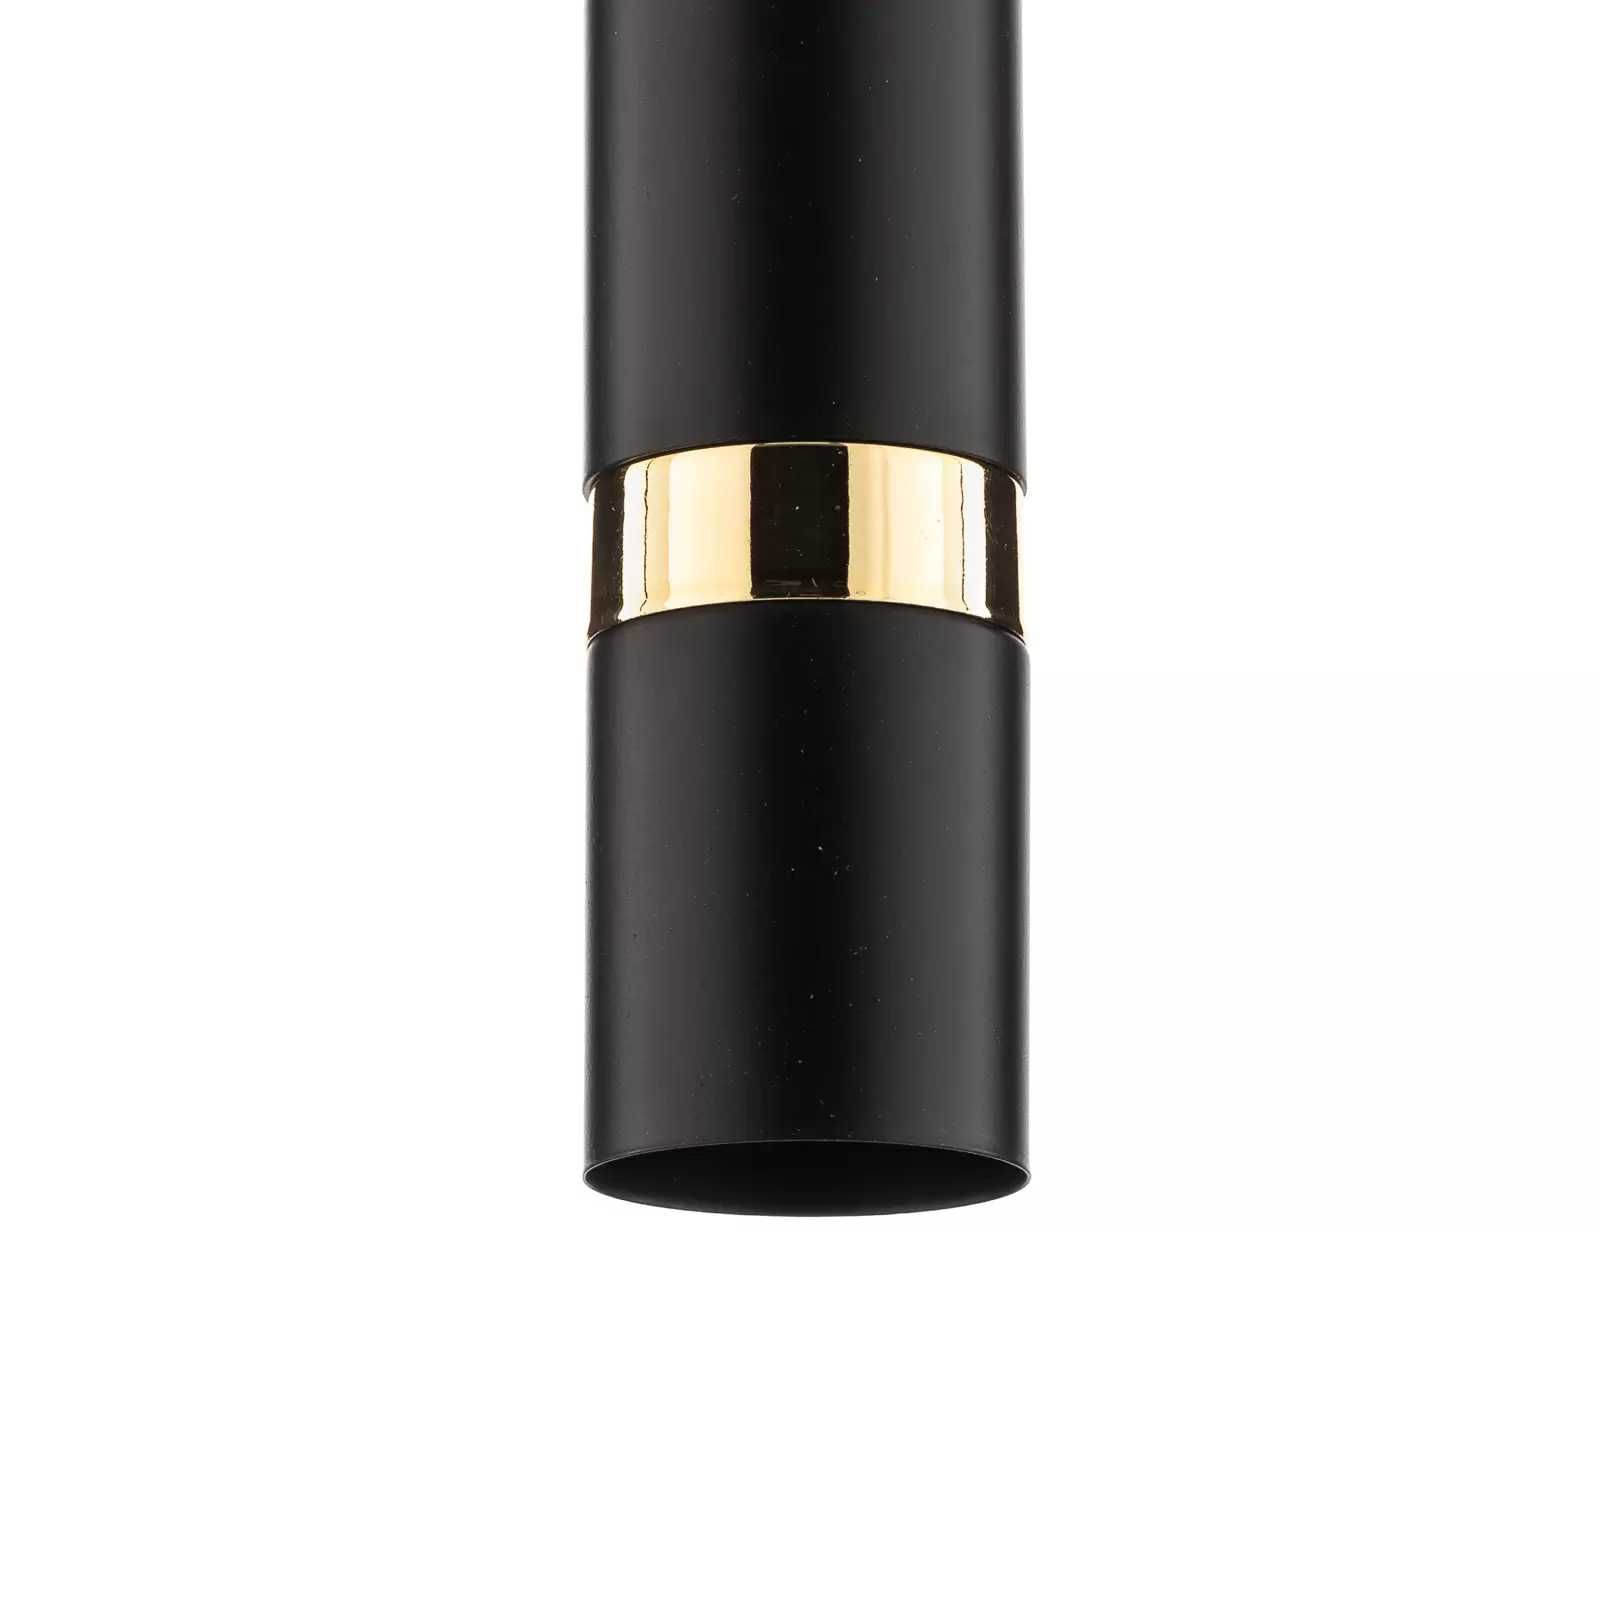 Lampa wisząca cylindryczna czarno-złota 1-punktowa Rondo firmy Luminex